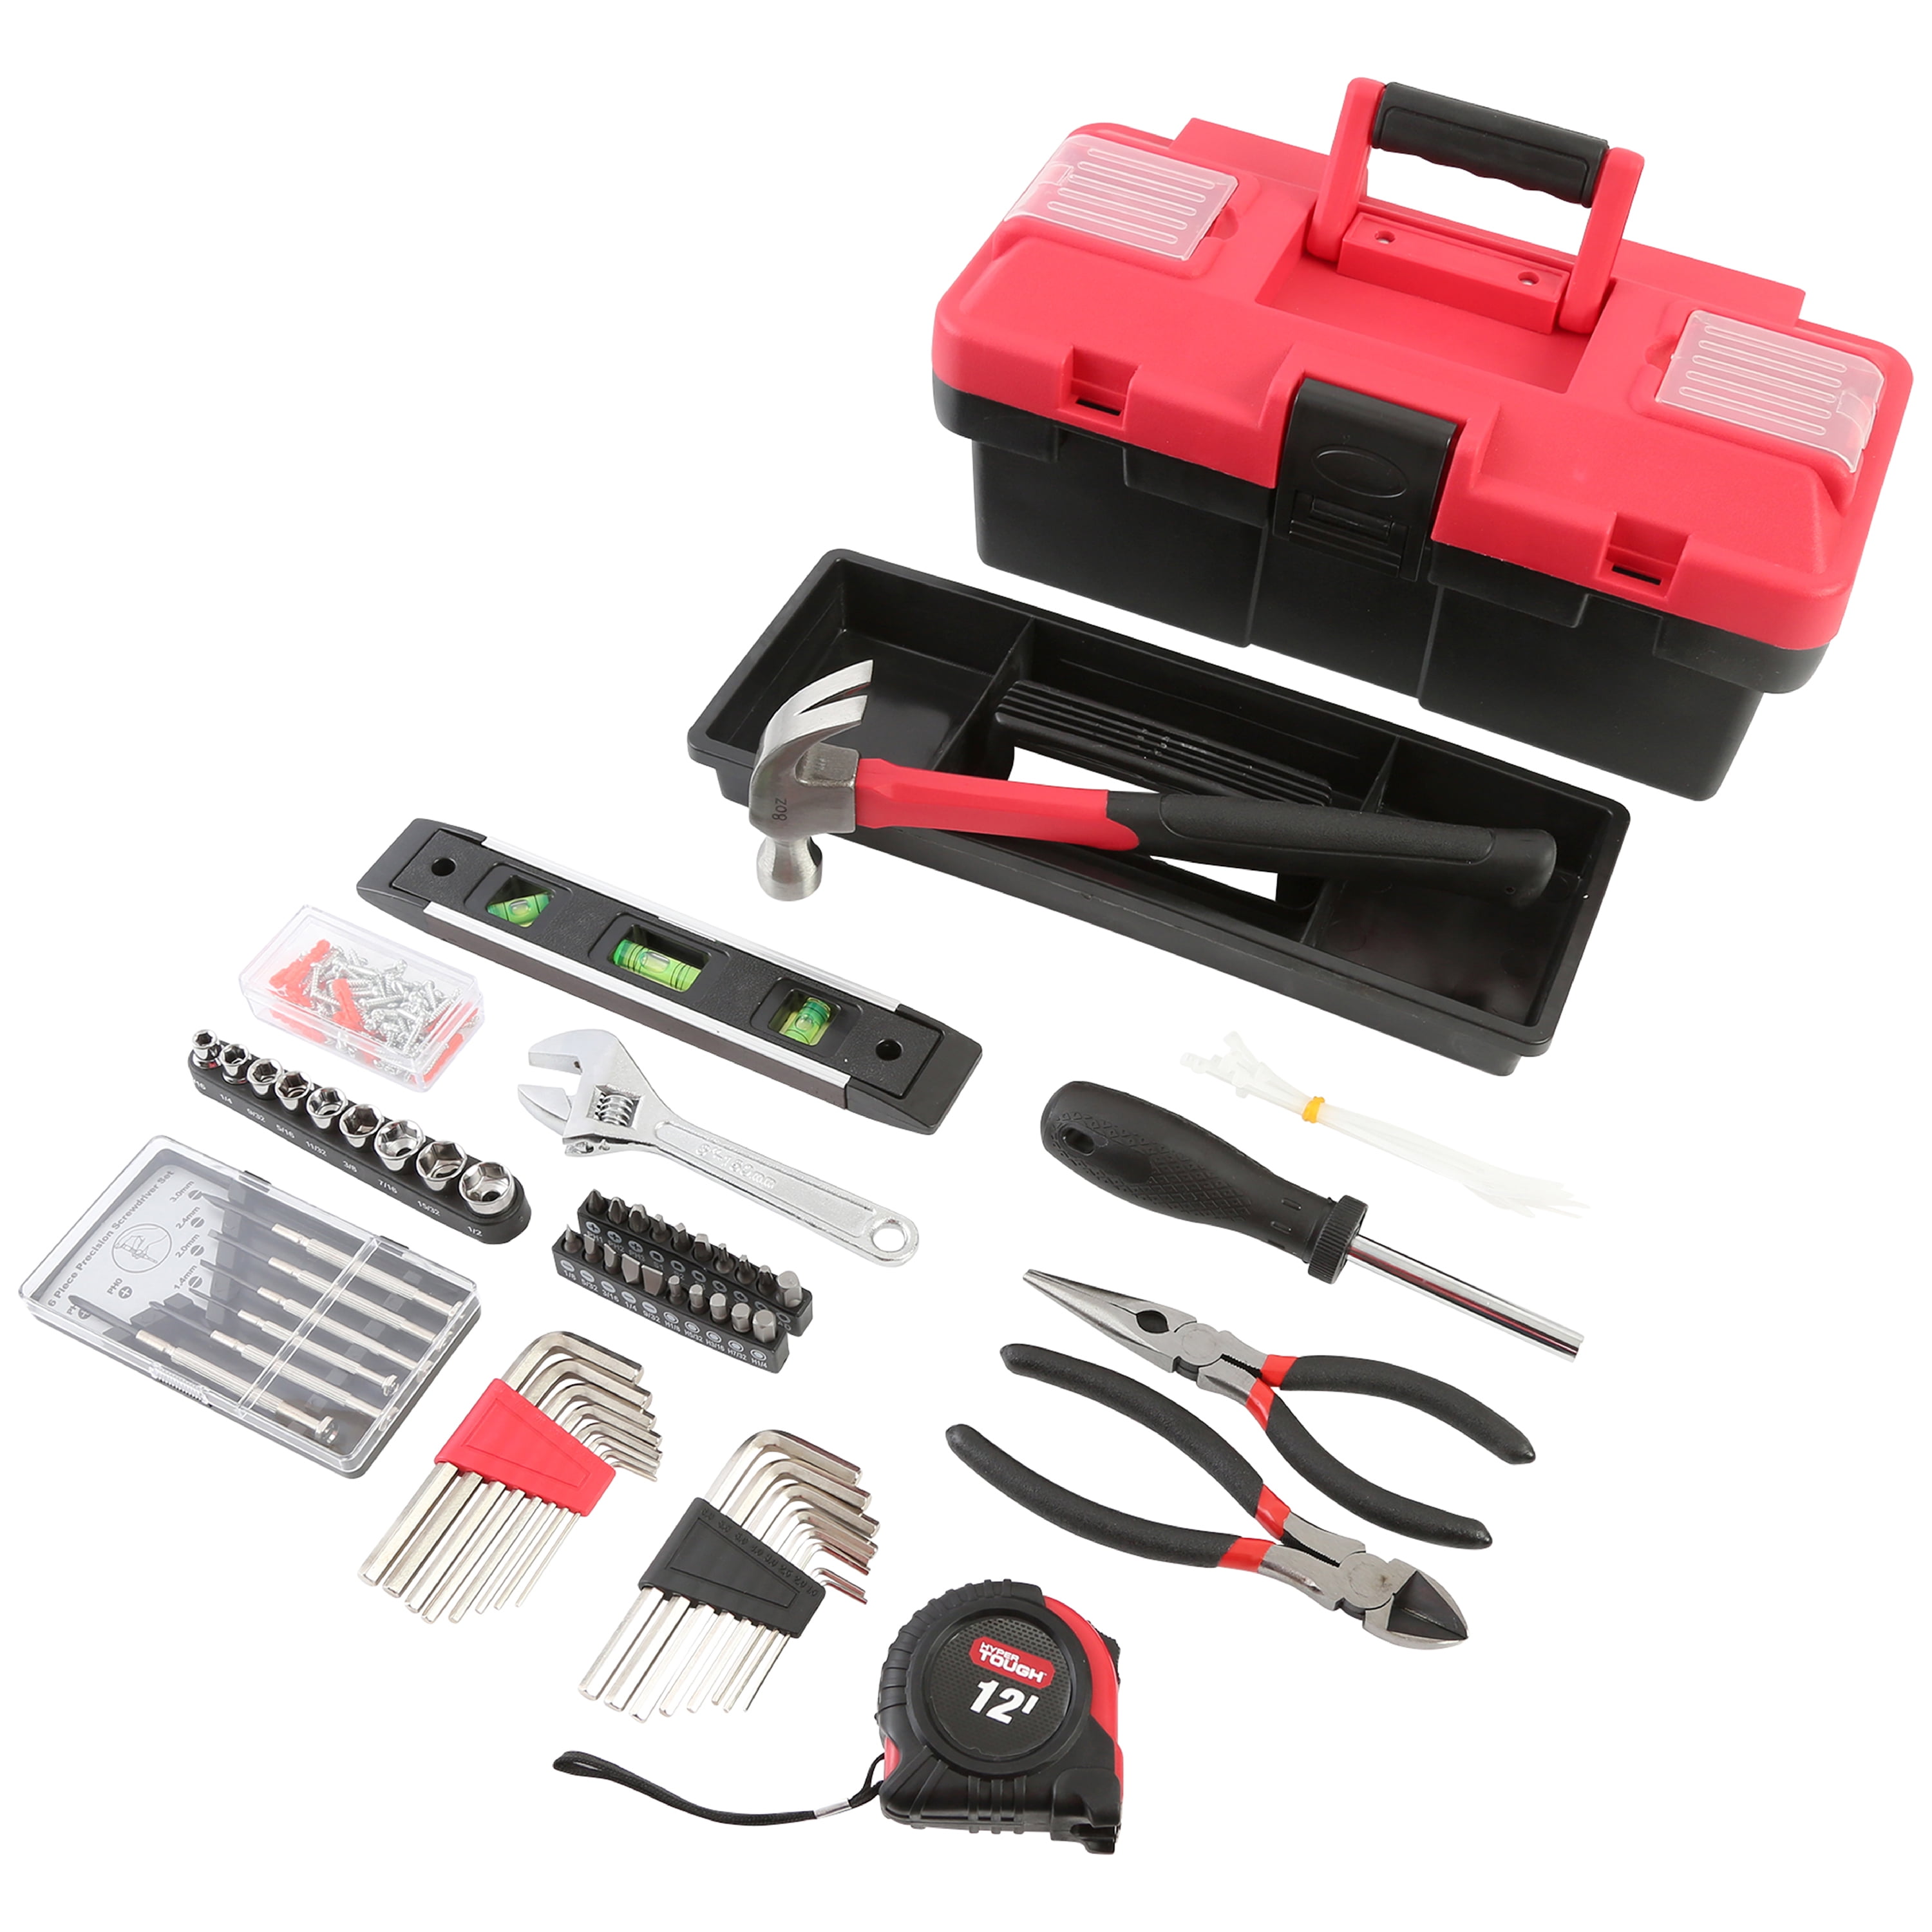 16 items Tool Kit for Builder/Farm/Garage etc 